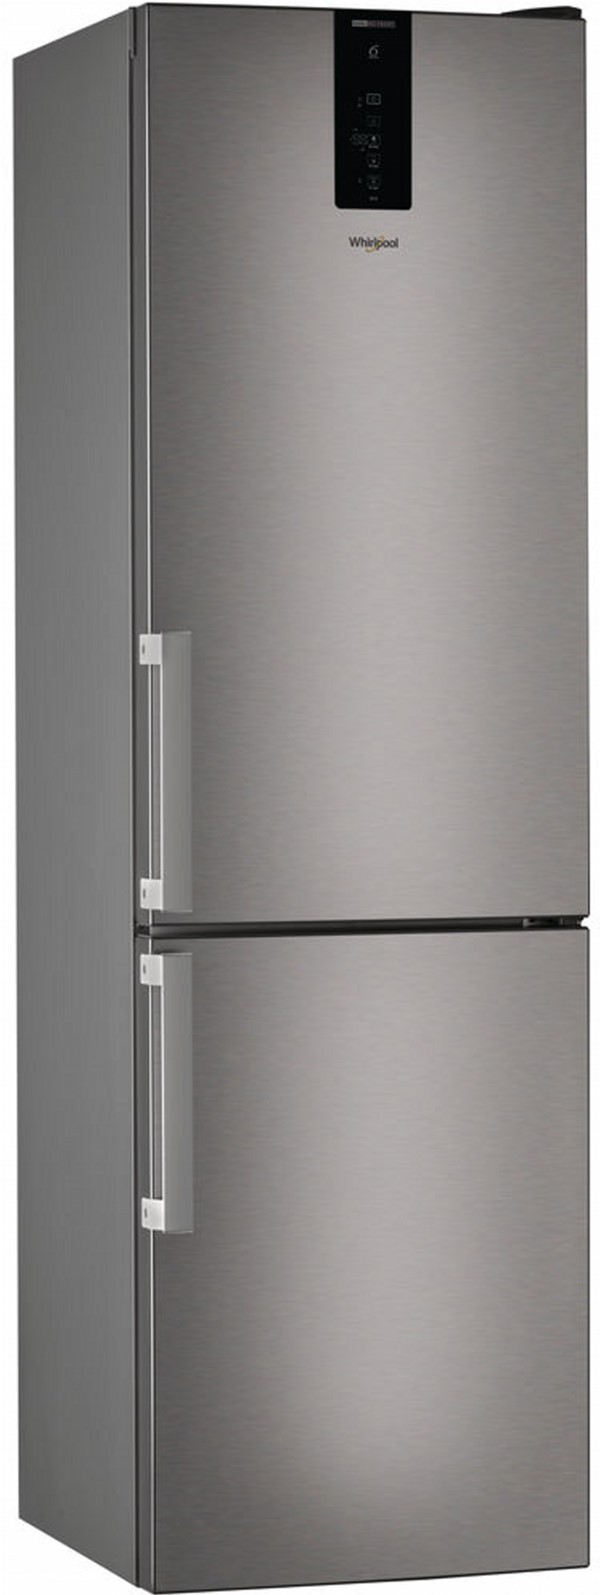 Холодильник Whirlpool W9921DMXH в интернет-магазине, главное фото